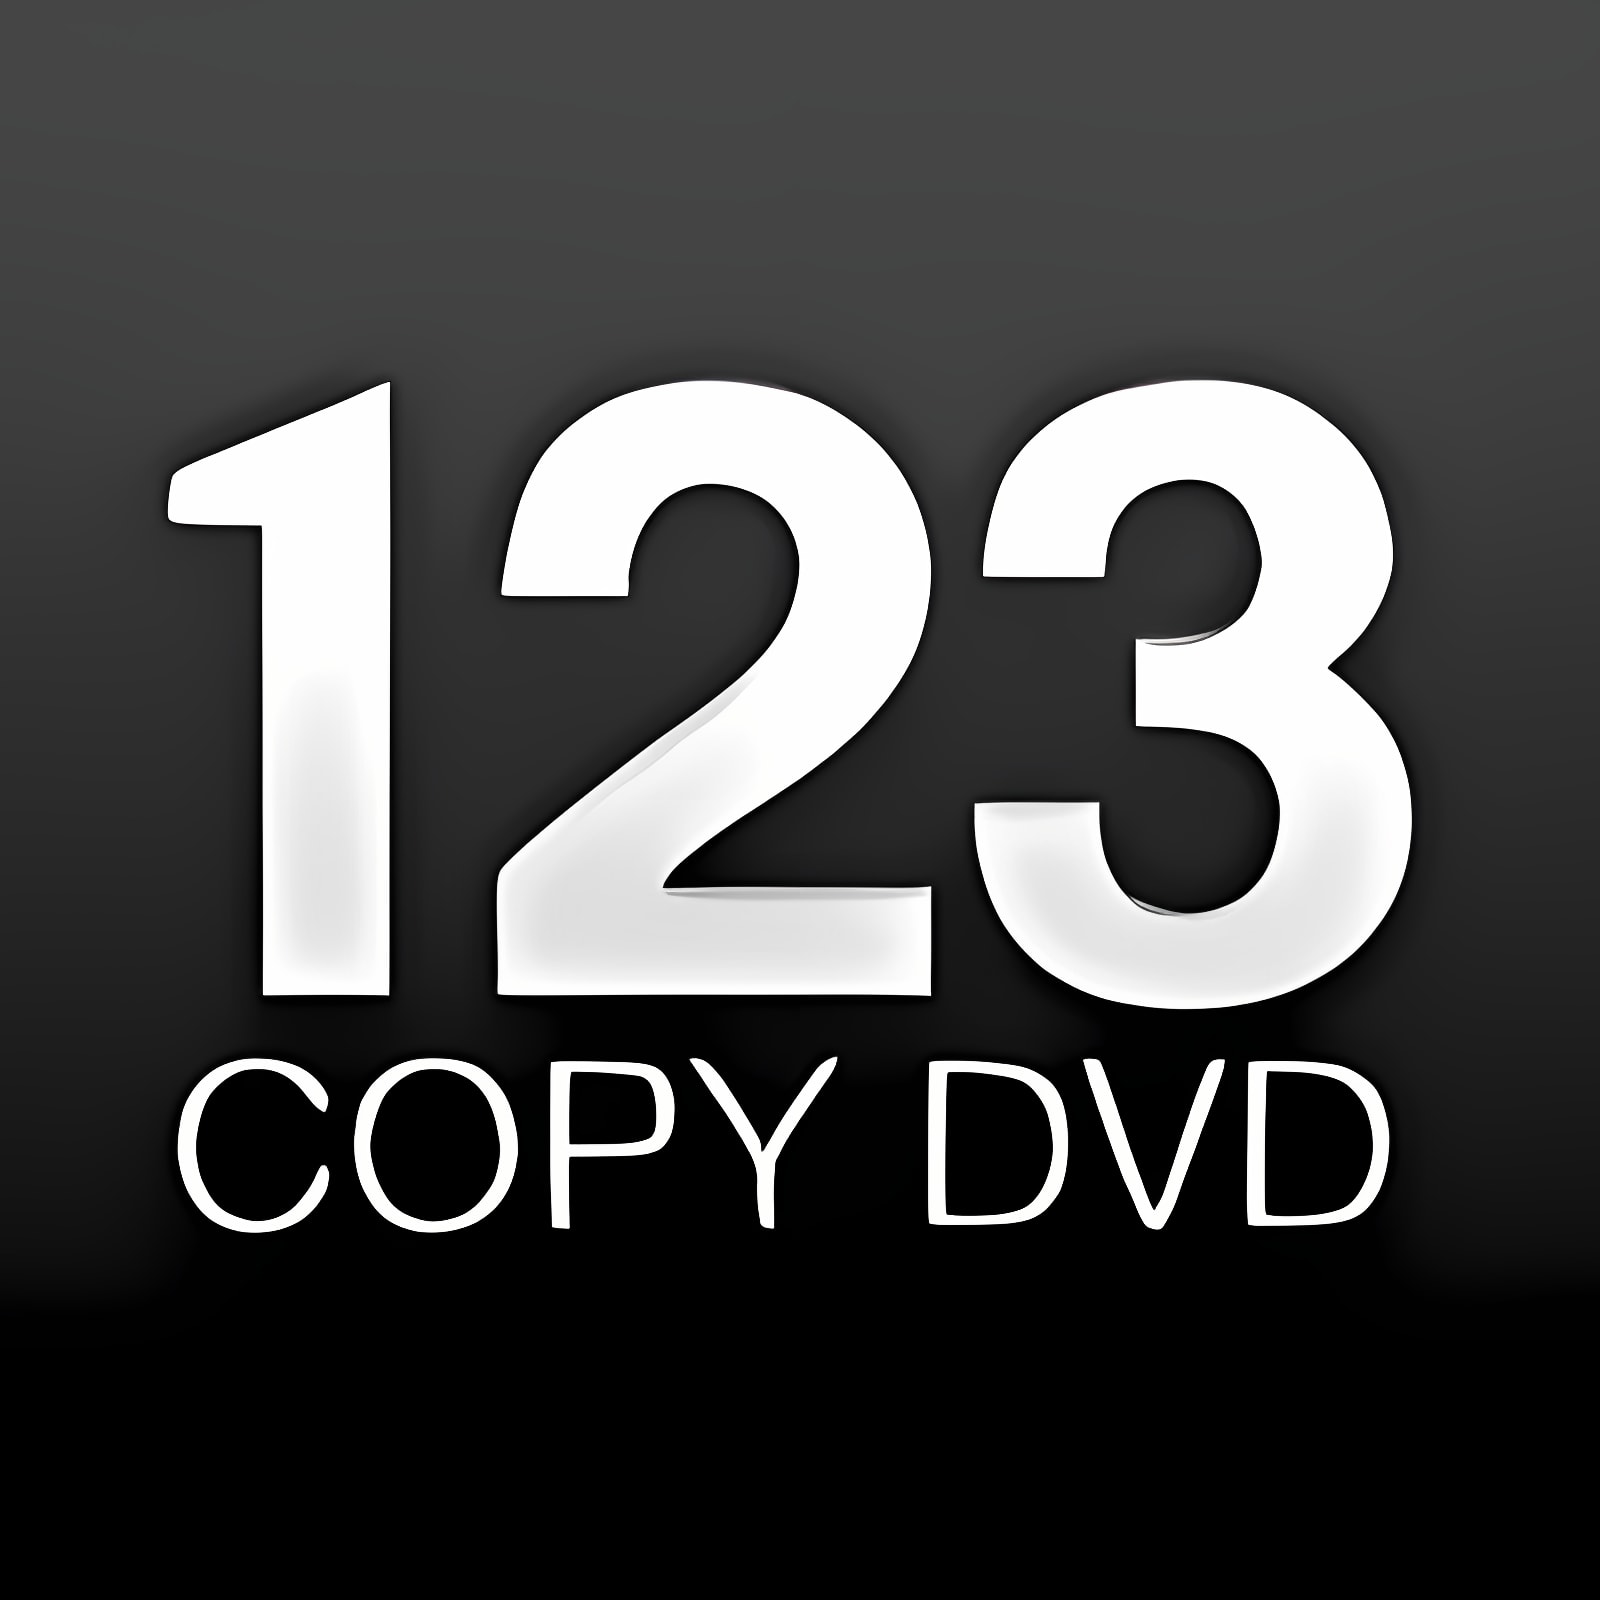 下载 123 Copy DVD 安装 最新 App 下载程序